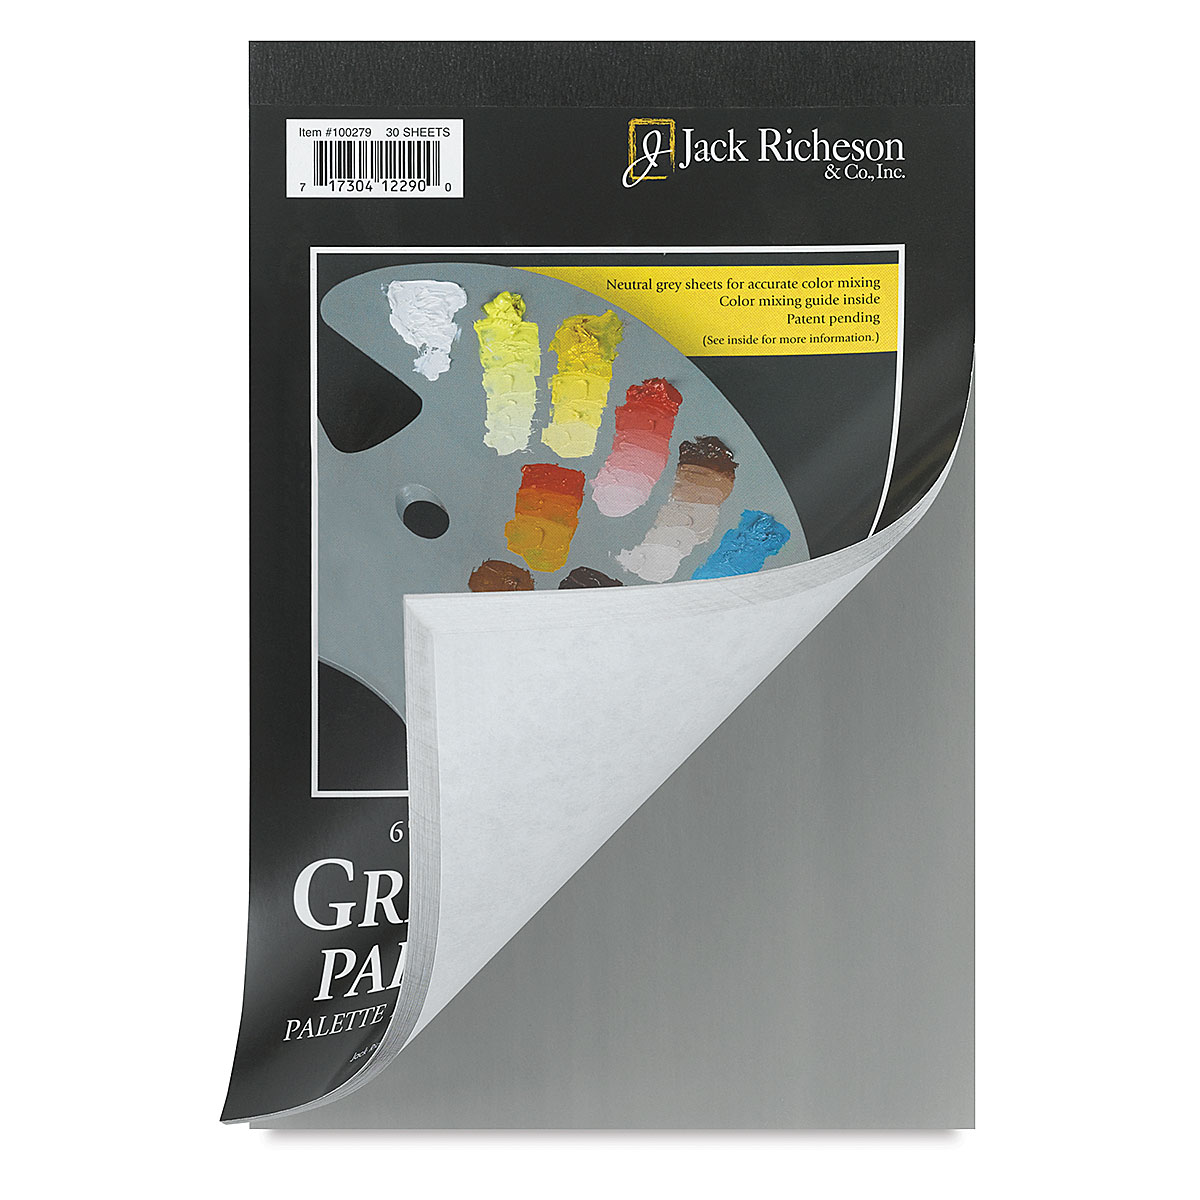 Blick Palette Paper Pad 9x12, 50 CT